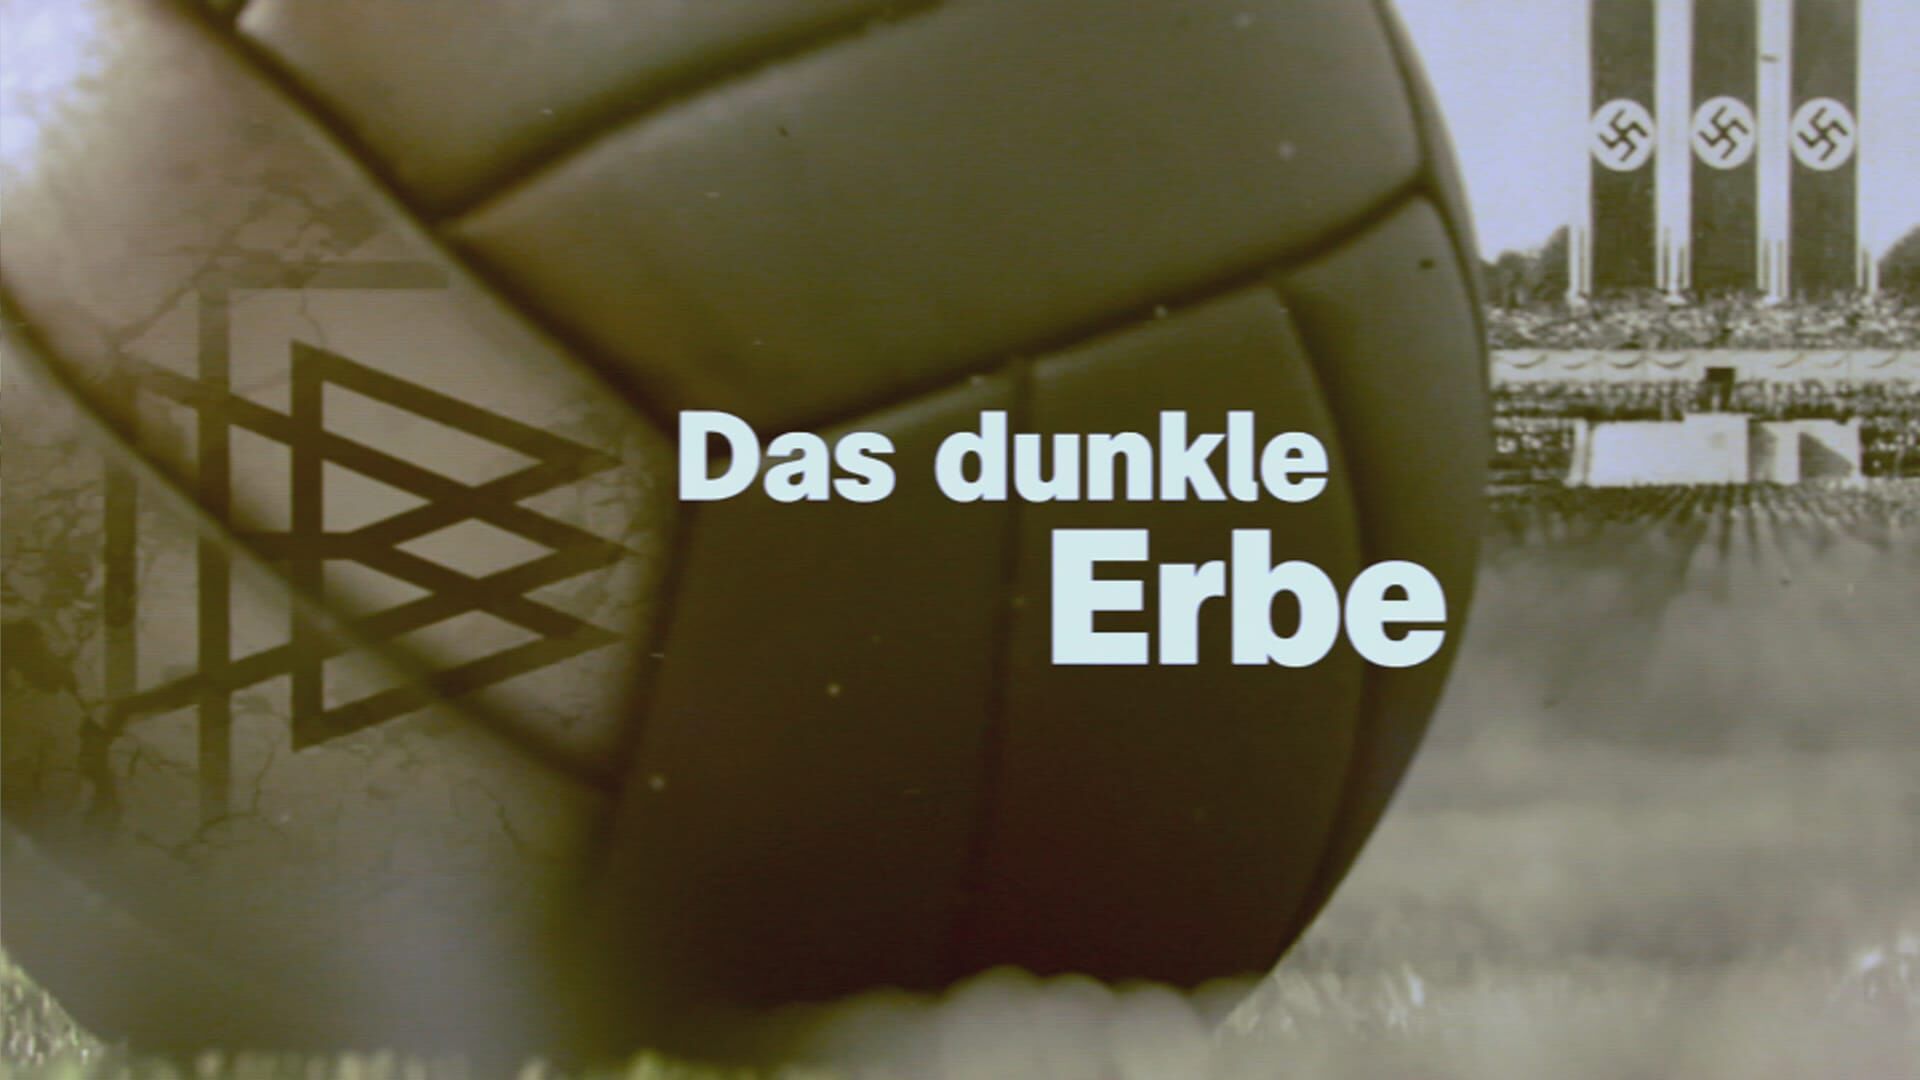 Das dunkle Erbe – Nazis im deutschen Fußball